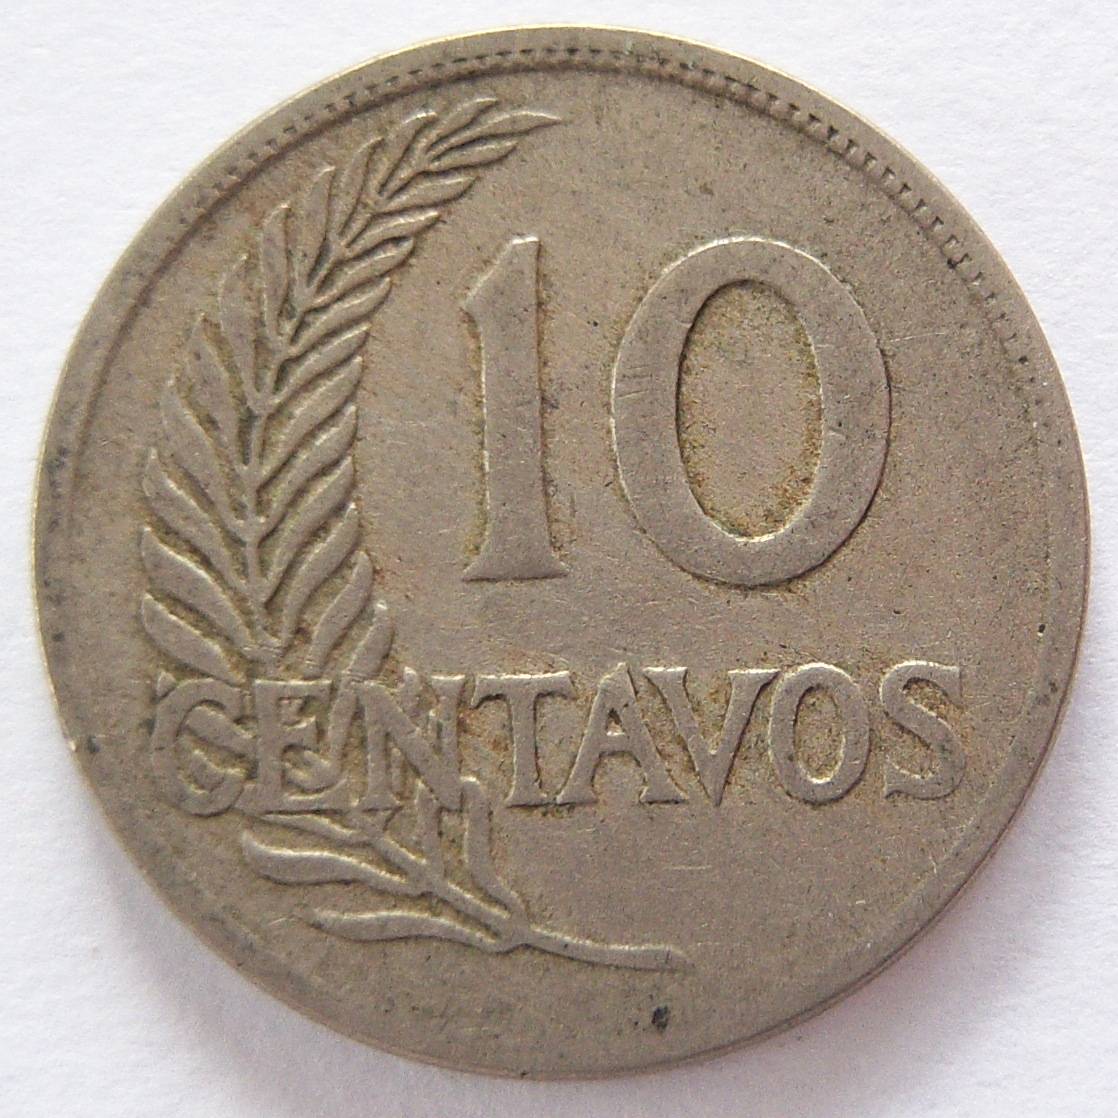  Peru 10 Centavos 1921   